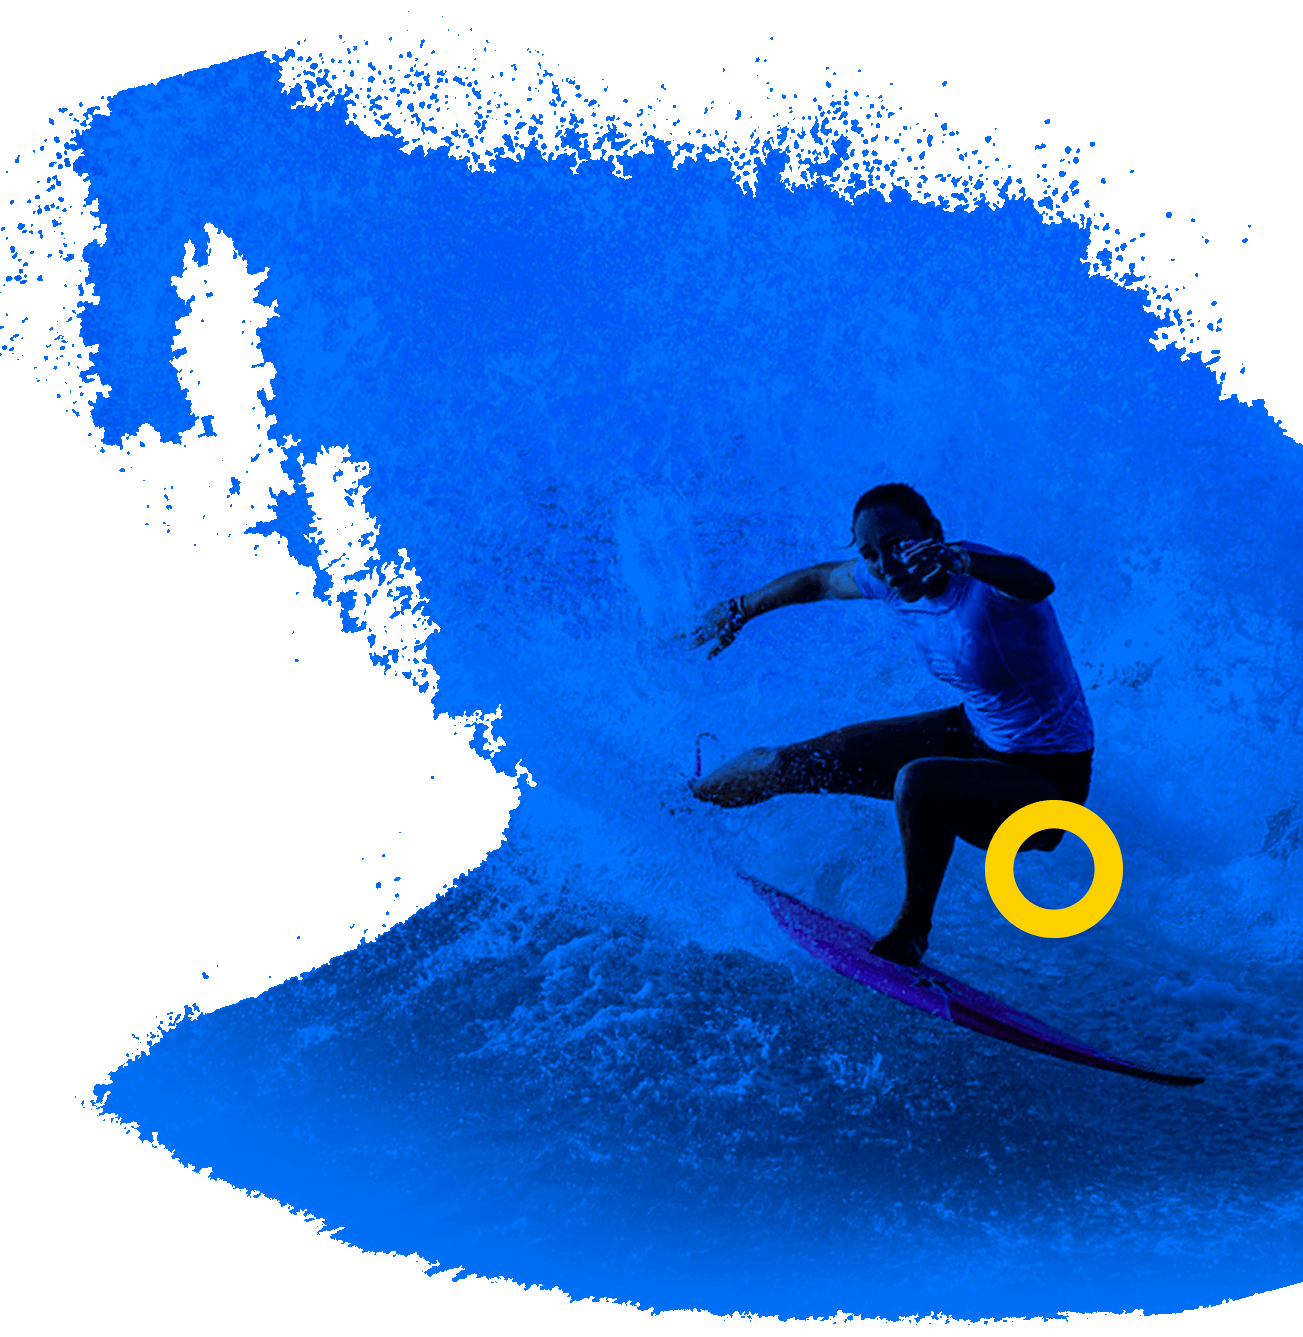 En la foto, una surfista deslizándose sobre una ola con su tabla.